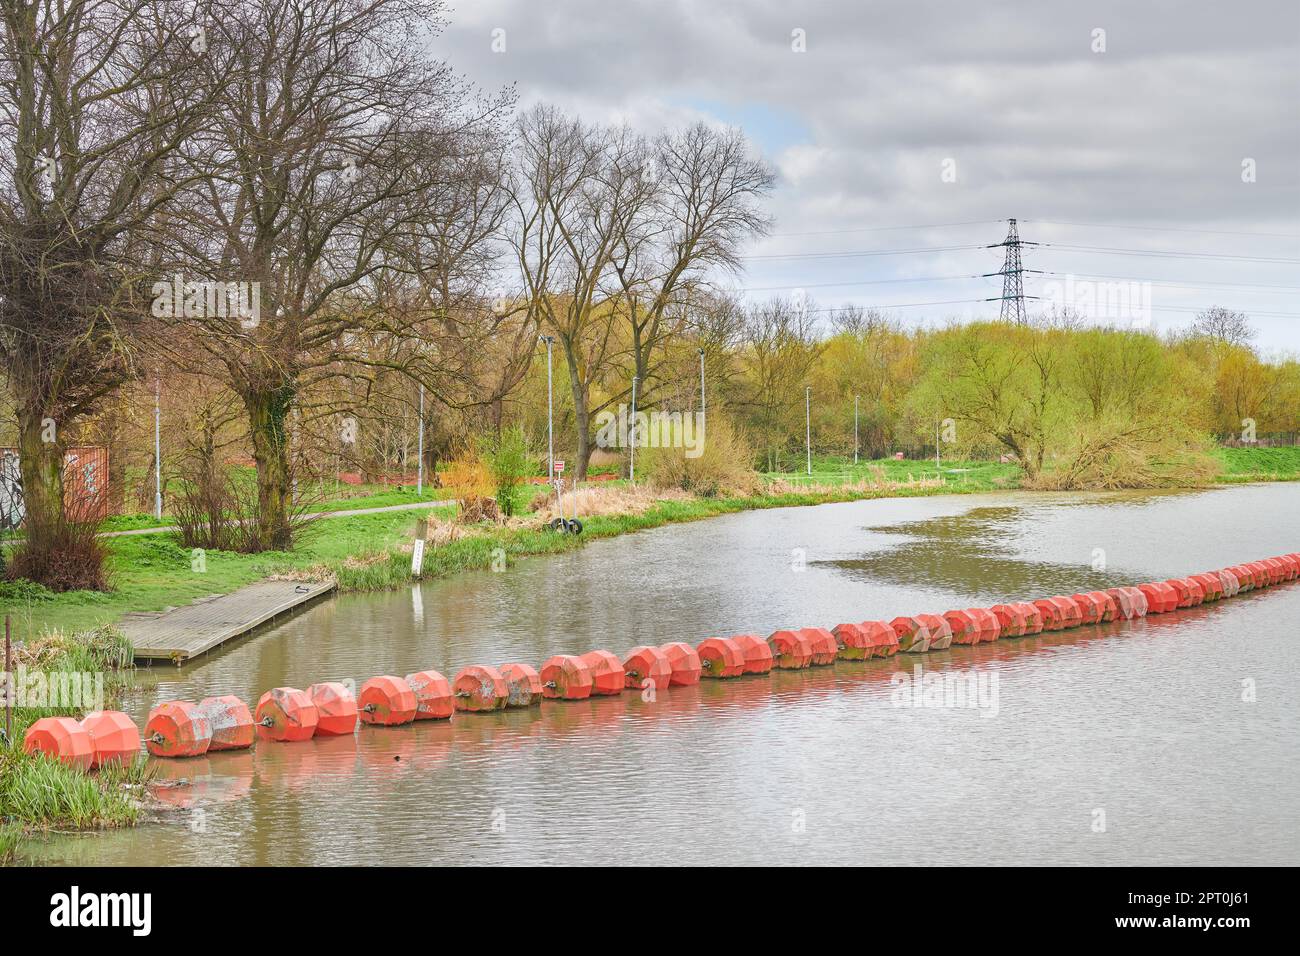 Sbarramento galleggiante per impedire a chiunque o a qualsiasi veicolo d'acqua di superare lo sbarramento sul fiume Nene a Northampton, Inghilterra. Foto Stock